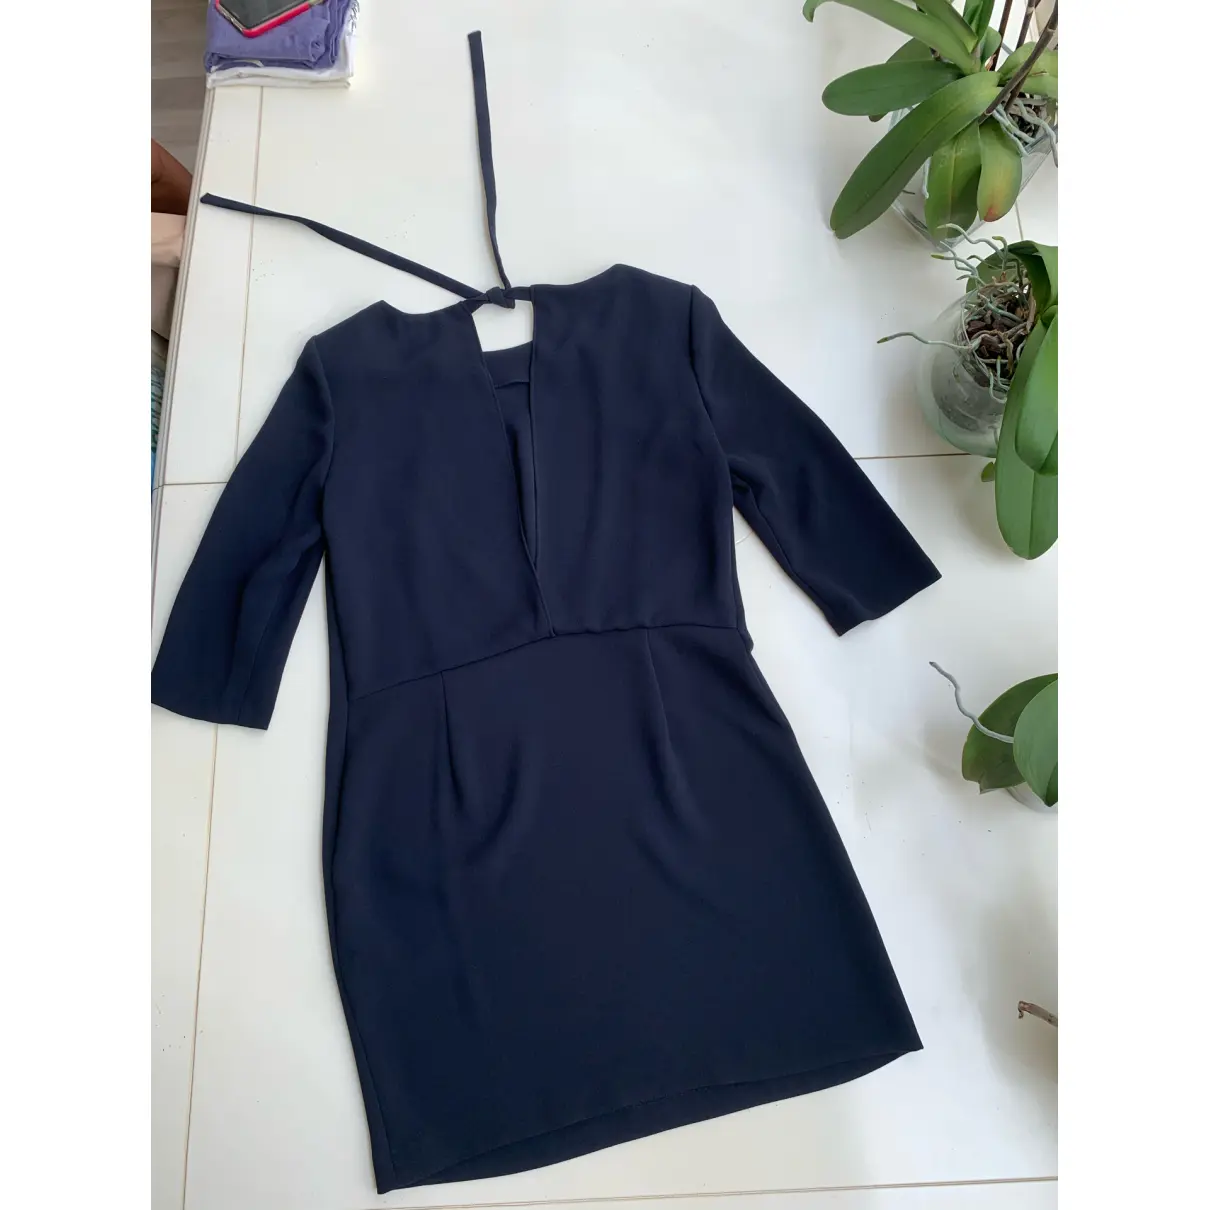 Buy Claudie Pierlot Spring Summer 2019 mid-length dress online